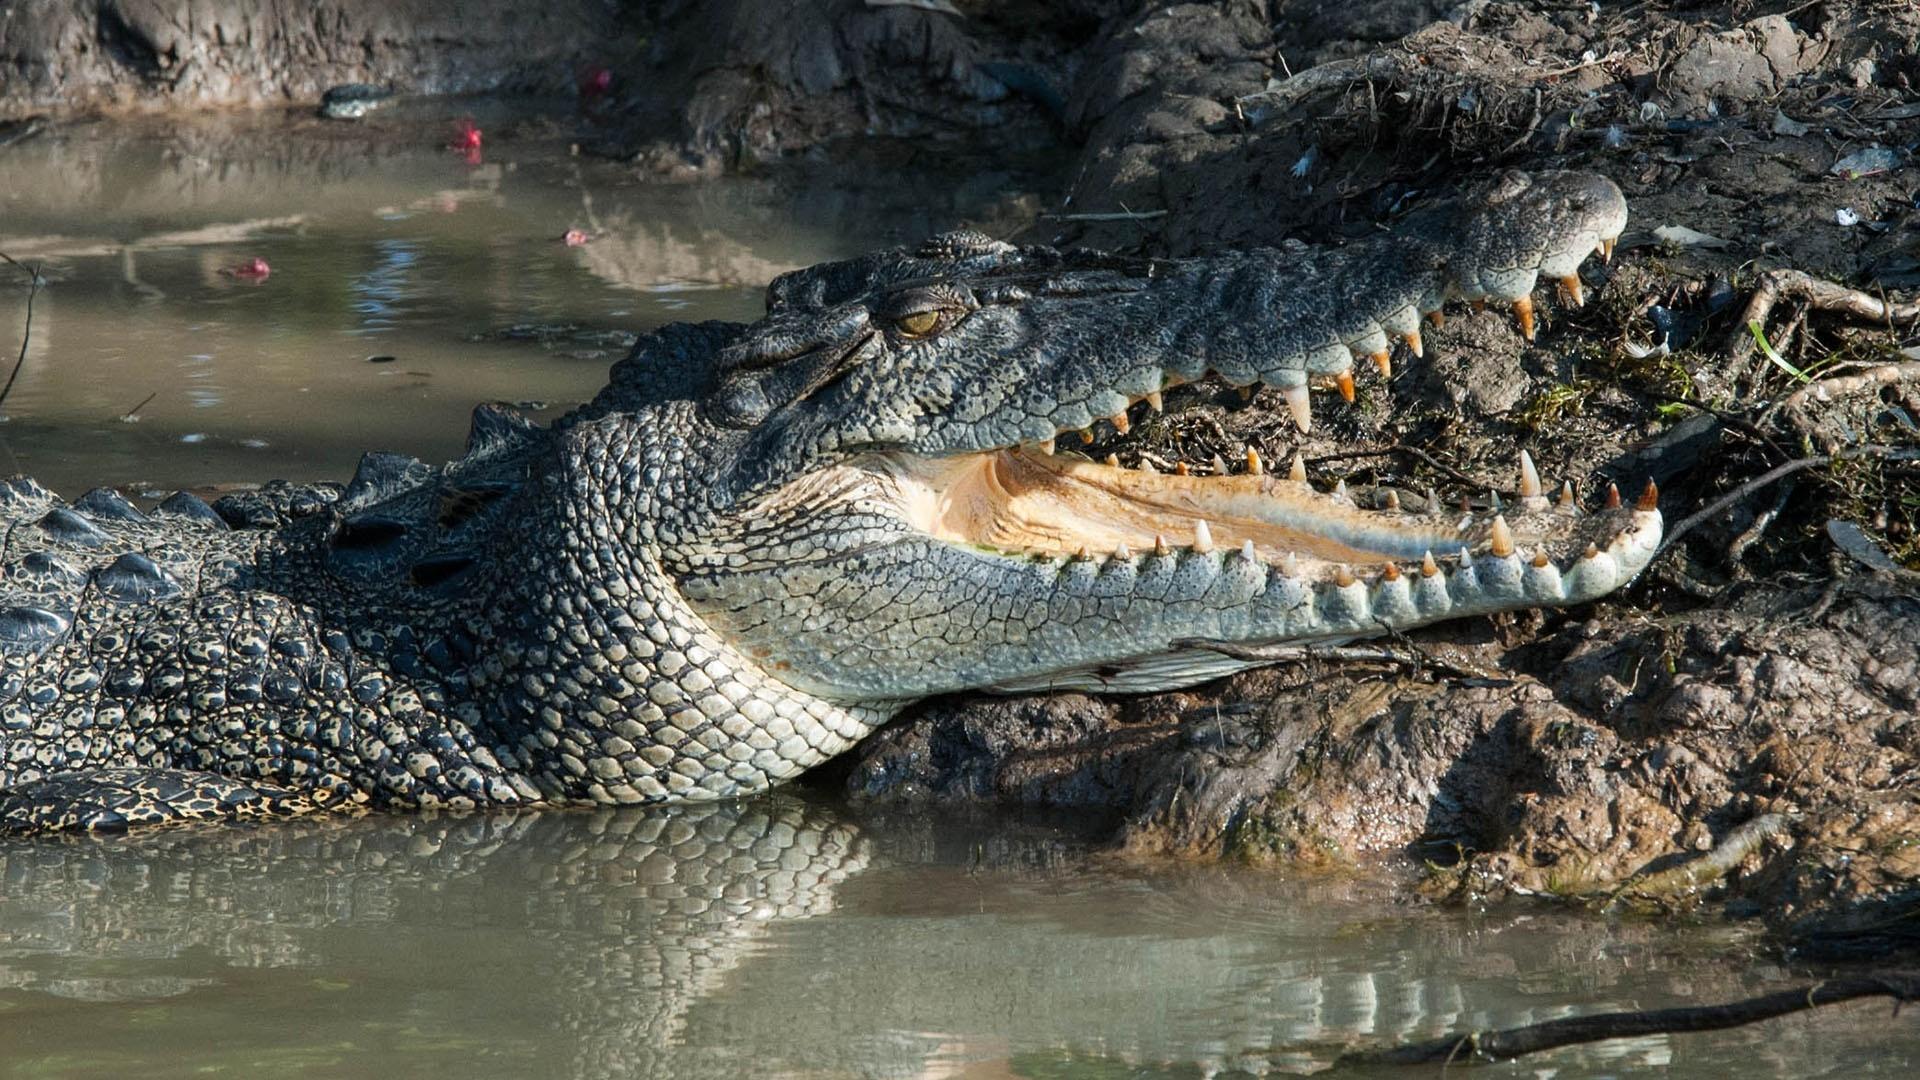 Closeup image of a crocodile.